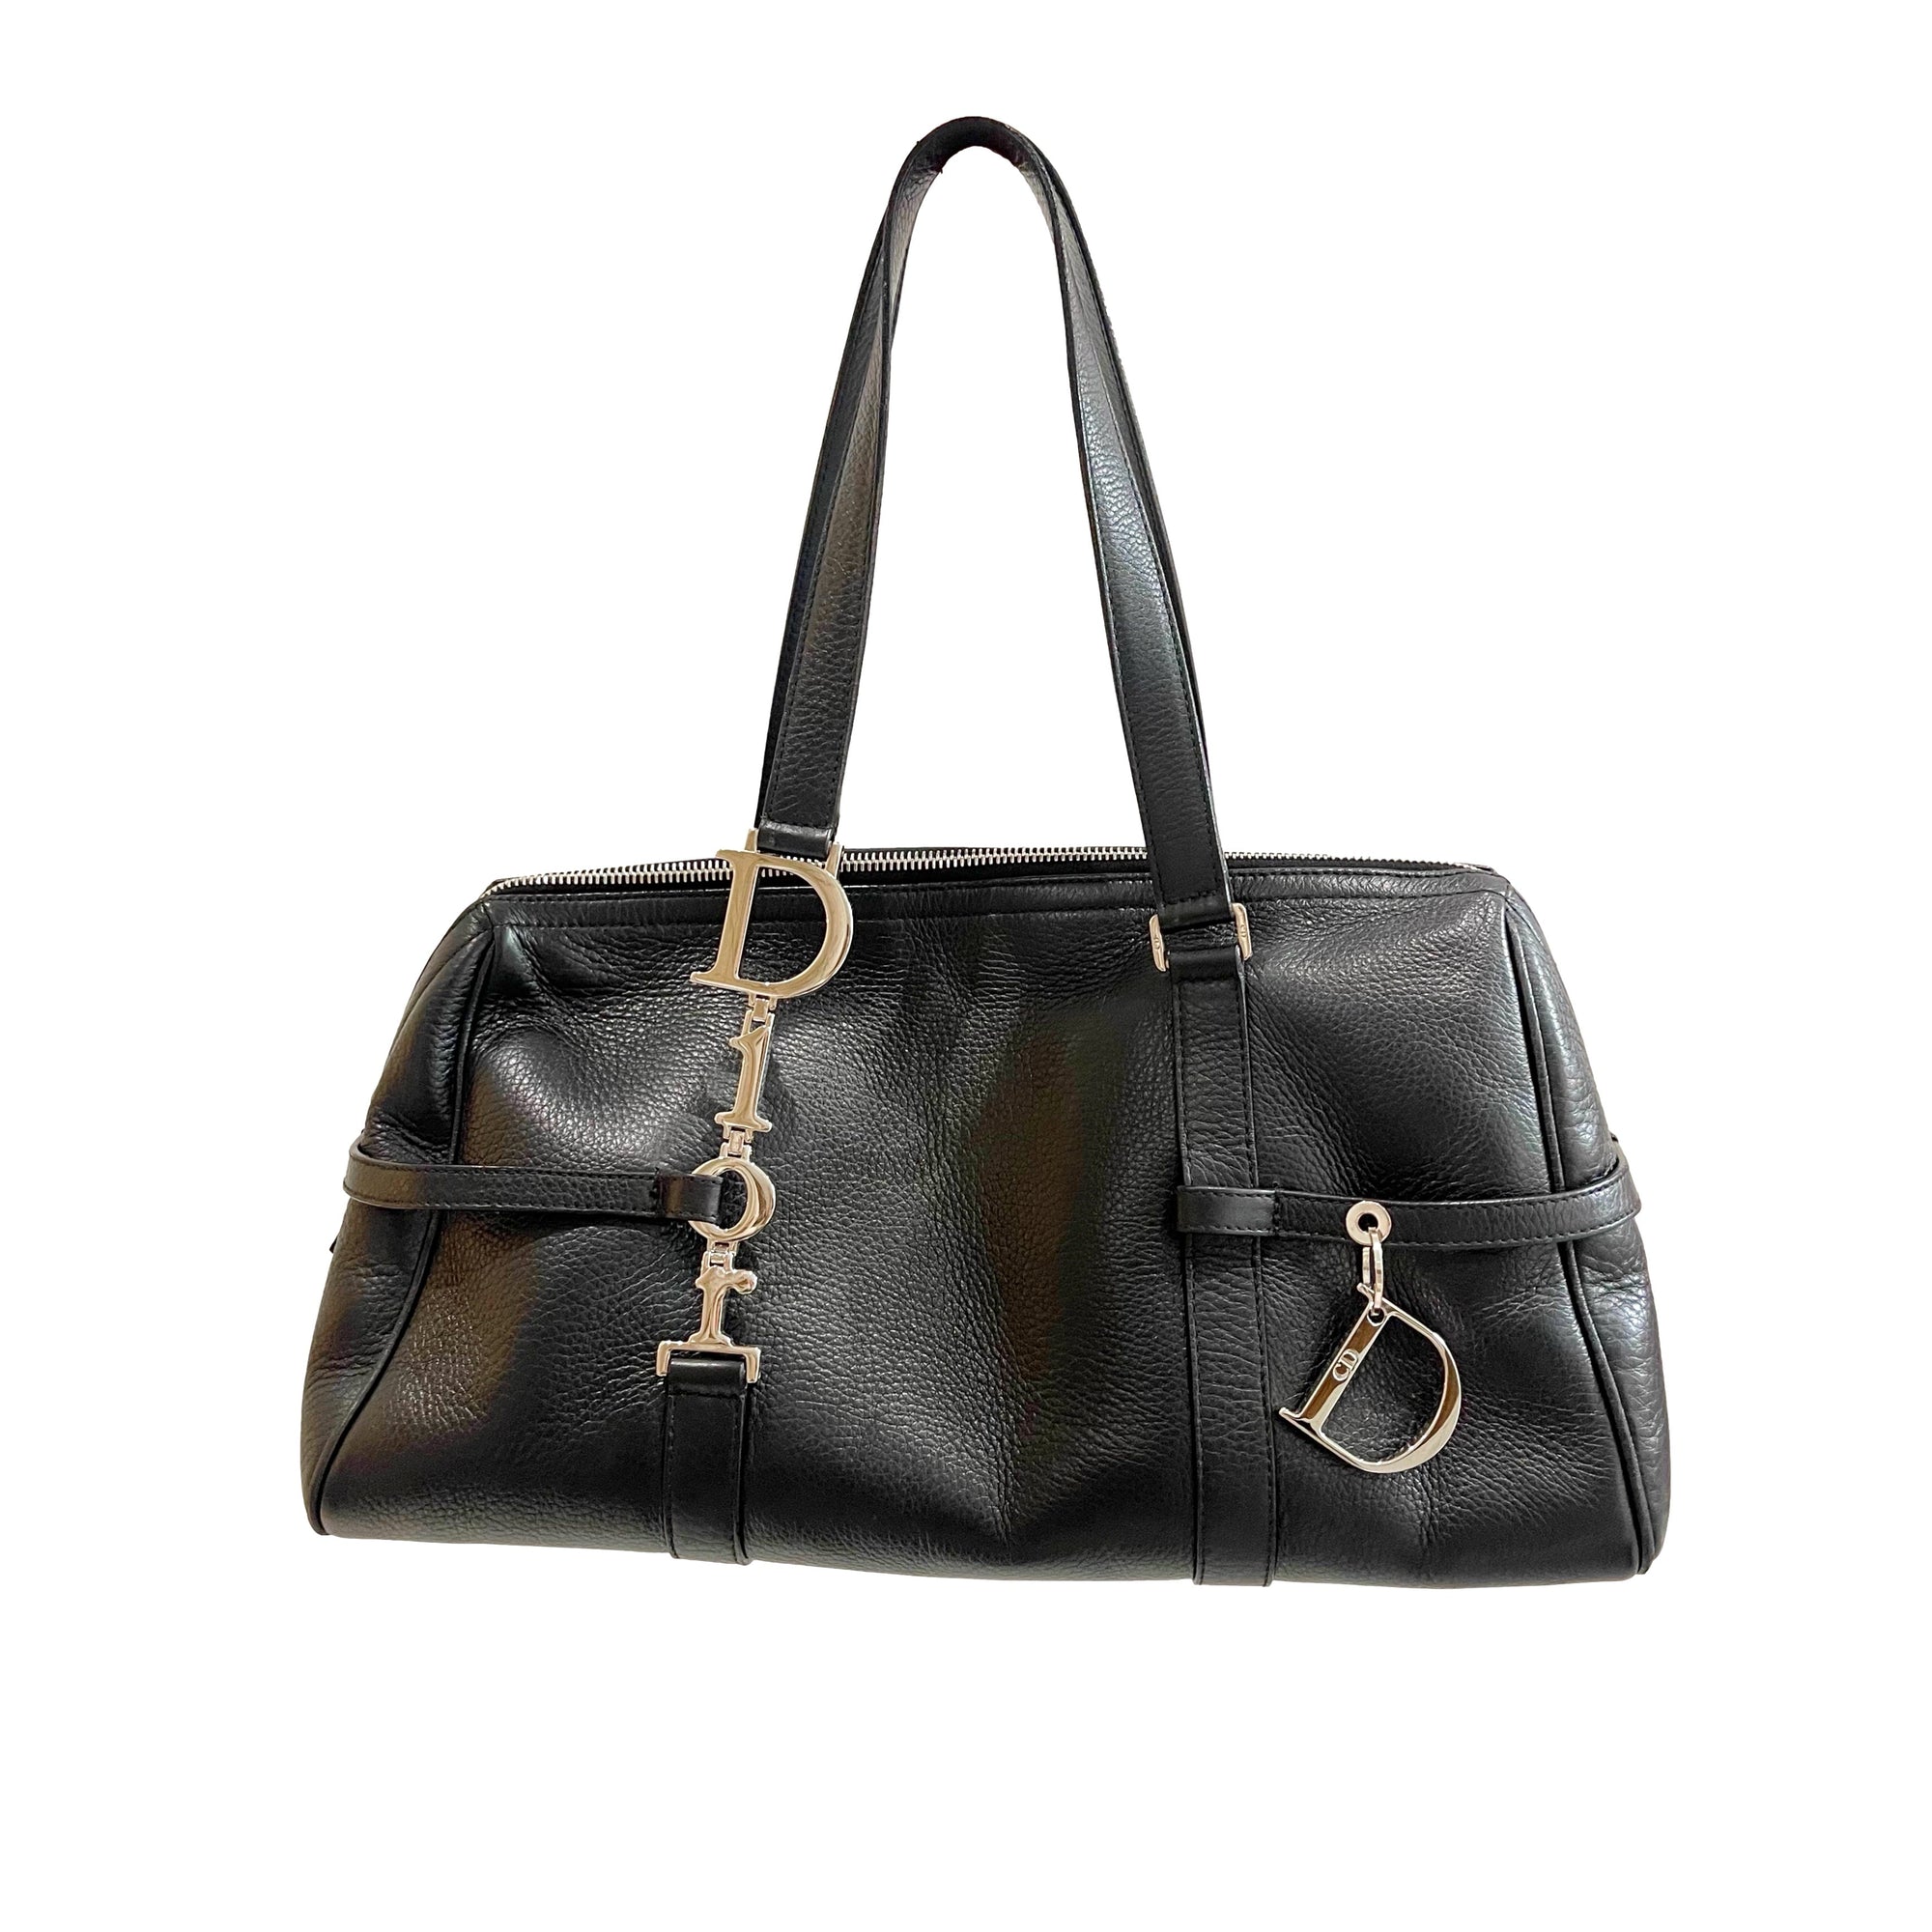 Dior Black Leather Shoulder Bag - Handbags